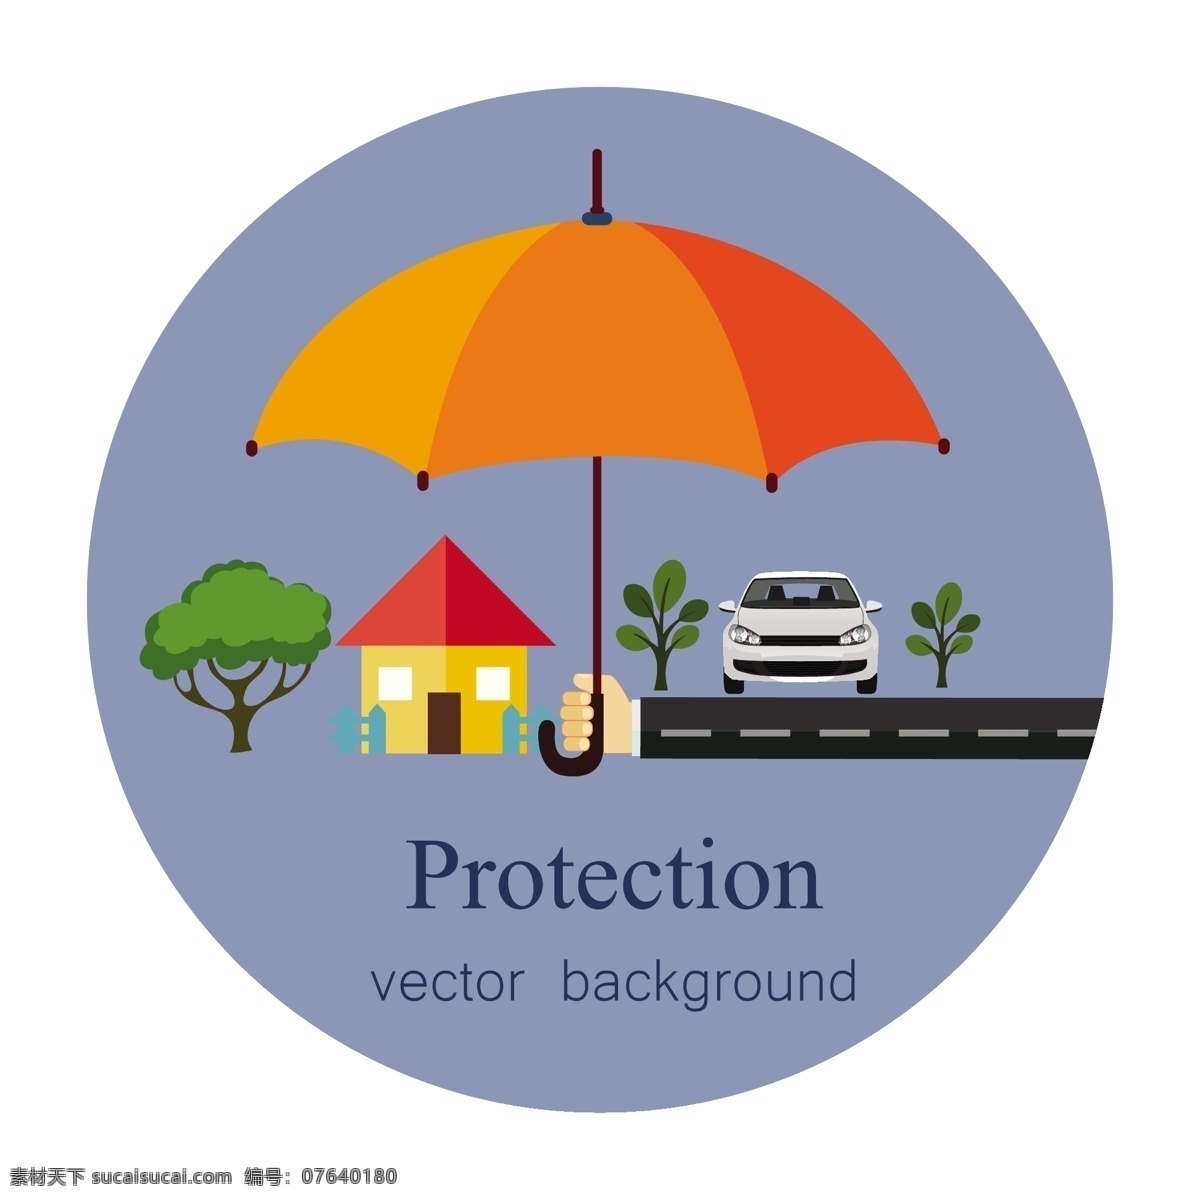 产权 保护 概念 背景 保护伞 自由 向量 伞 房子 手 汽车 树 矢量图